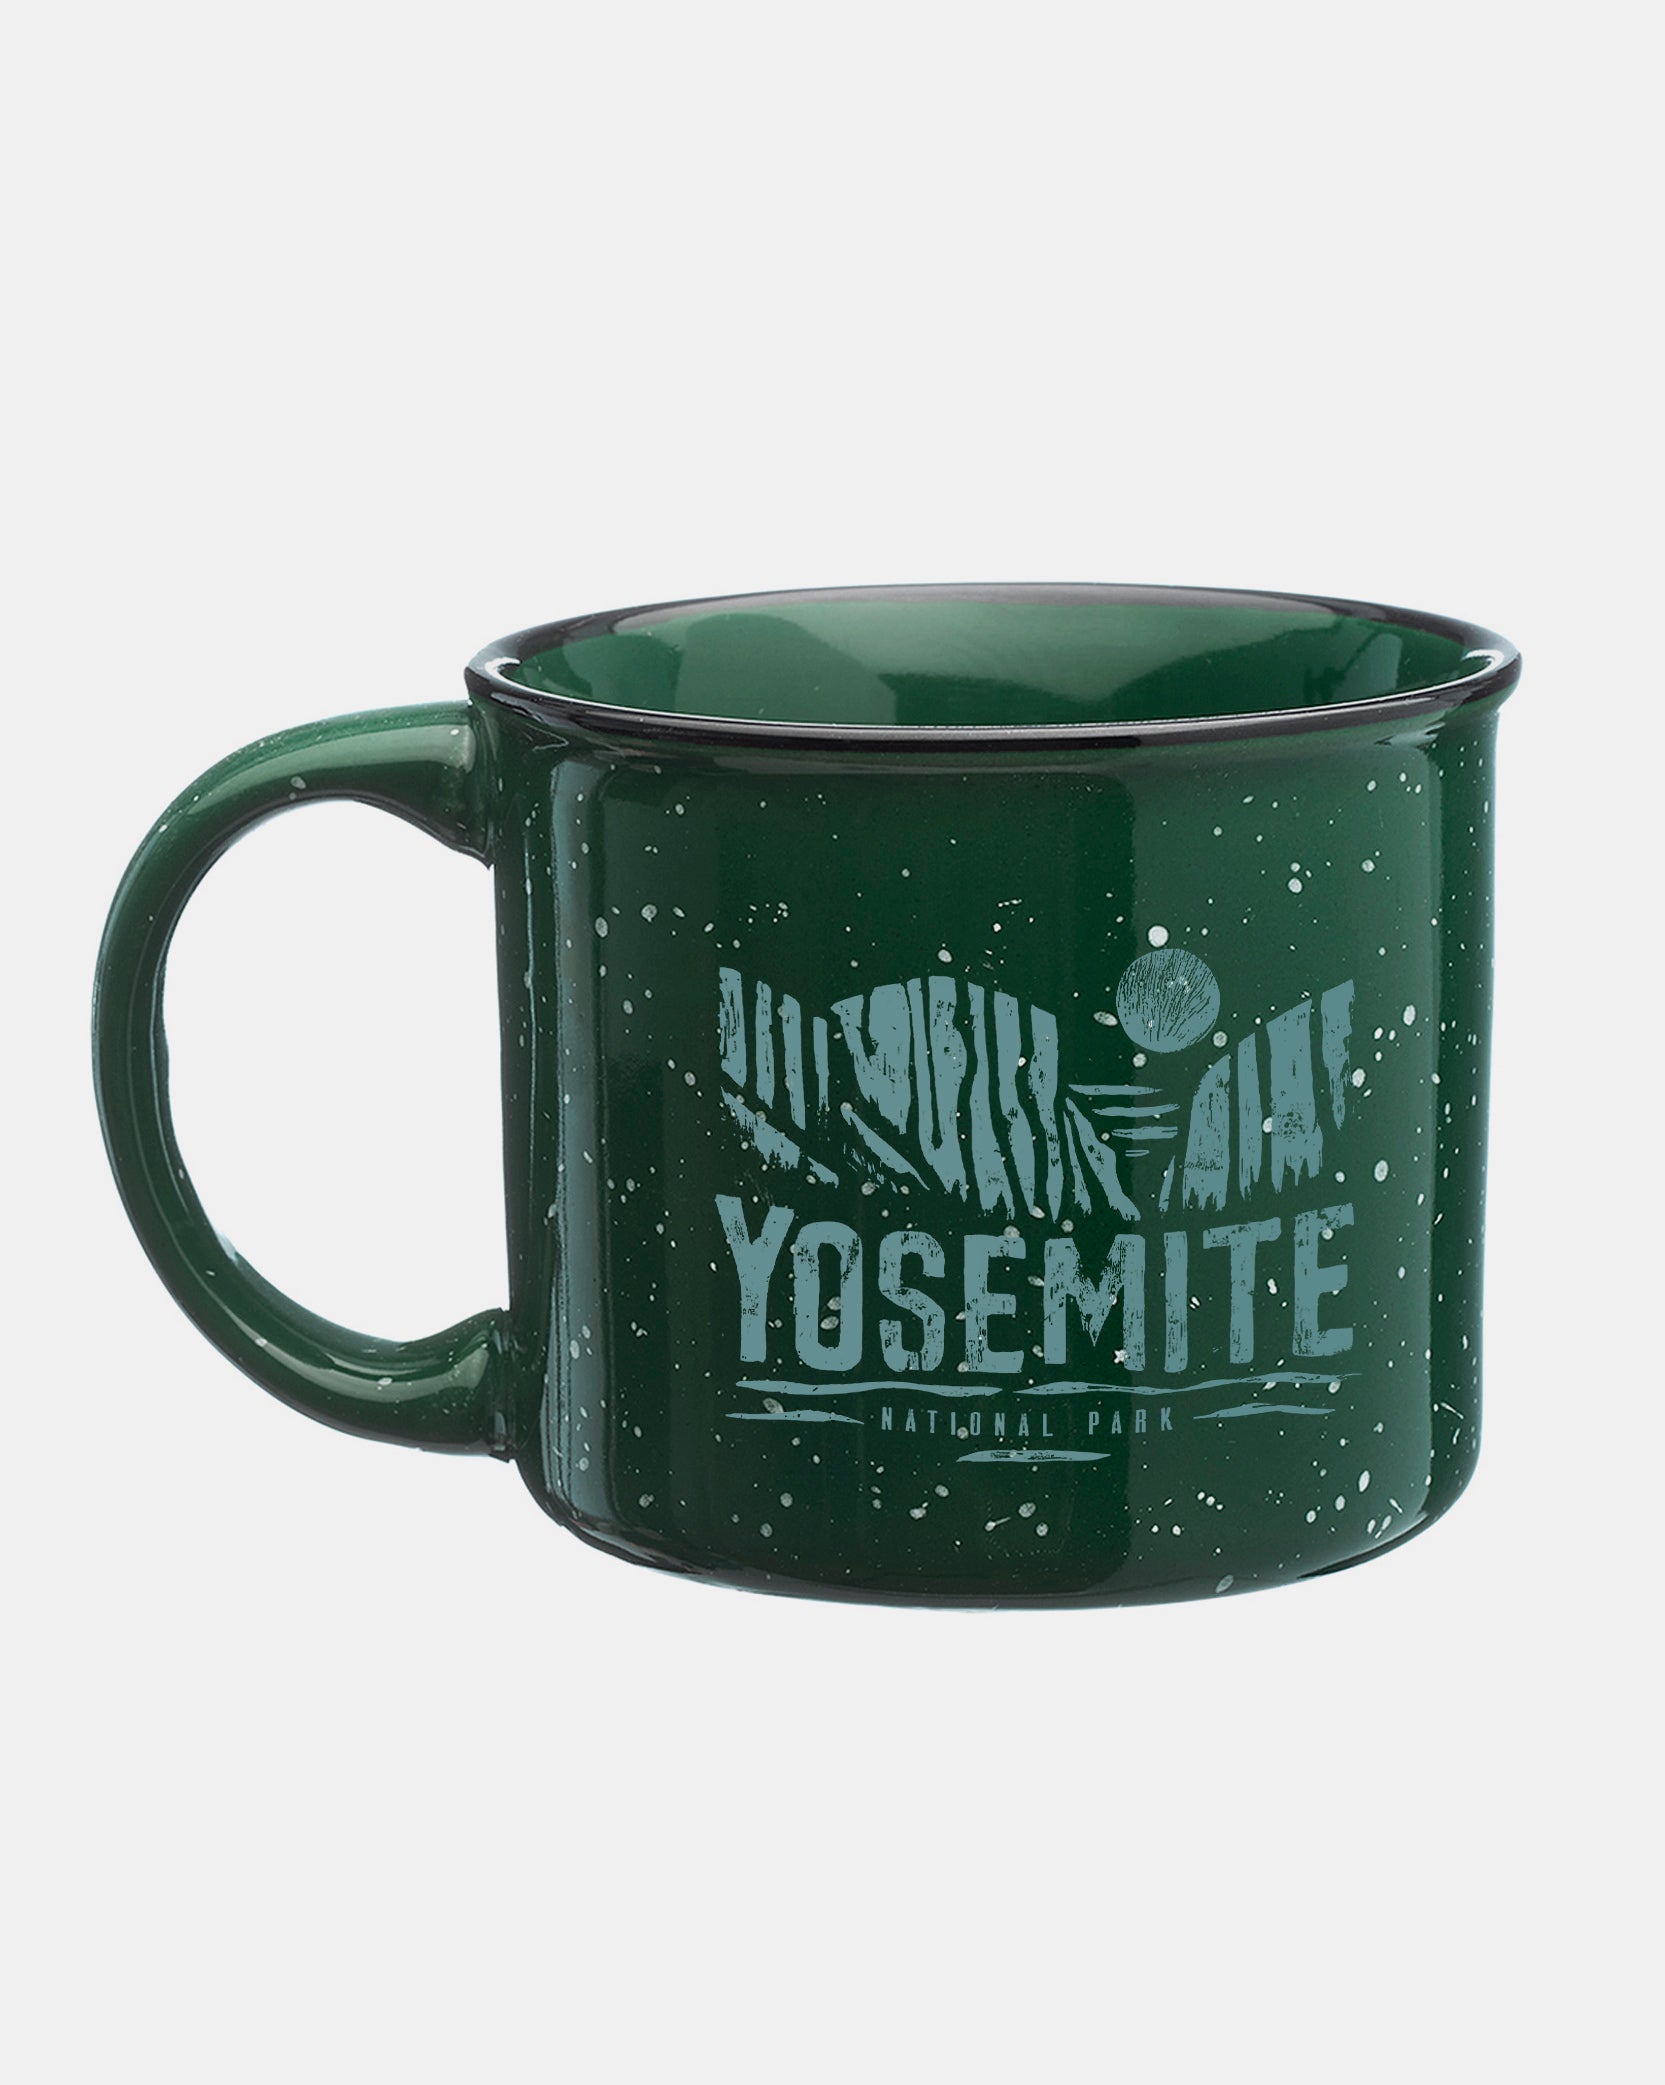 Yosemite National Park Mug 1